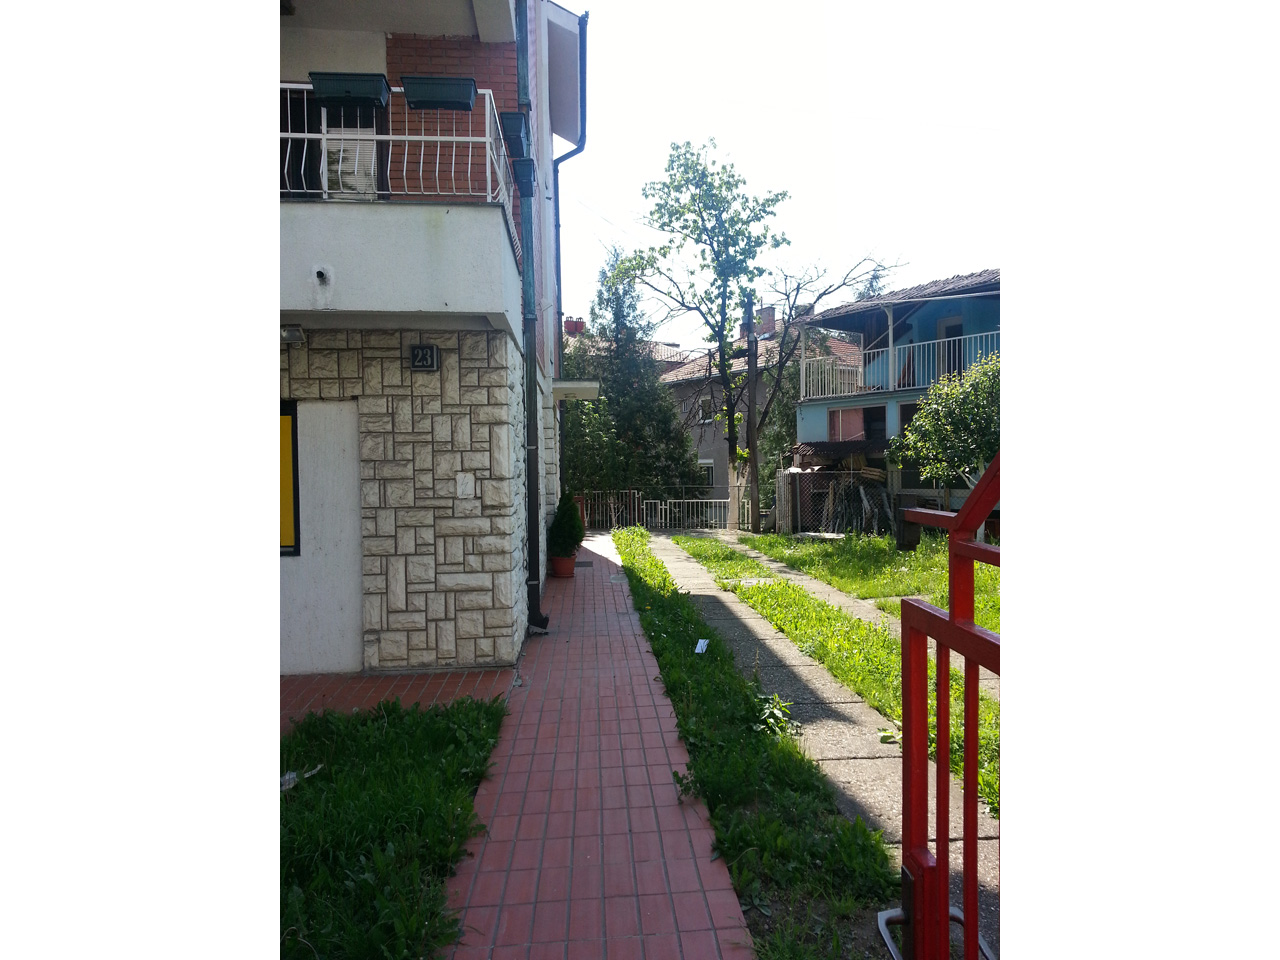 Photo 2 - HOME FOR OLD - ZARKOVACKI VRT Homes and care for the elderly Belgrade